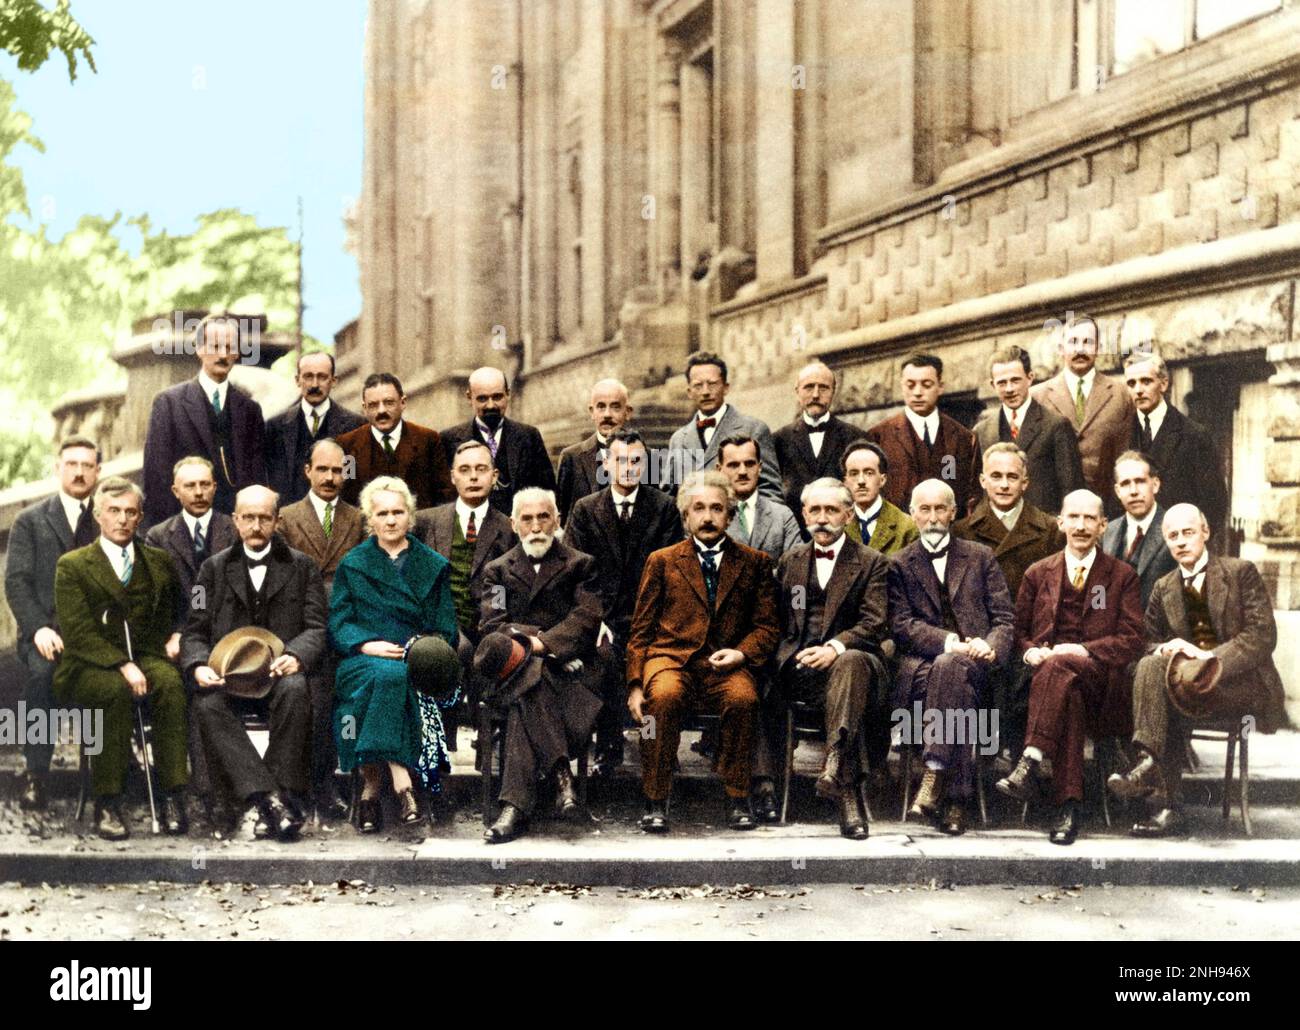 Gli Istituti internazionali Solvay per la fisica e la chimica di Bruxelles hanno tenuto la prima conferenza mondiale sulla fisica nel 1911 e hanno iniziato ad ospitarli ogni tre anni. La conferenza più famosa è stata la quinta conferenza sugli elettroni e i fotoni del 1927. Tra i partecipanti figuravano Marie Curie, Albert Einstein, Niels Bohr e Werner Heisenberg, per citarne alcuni. Dei 29 partecipanti, 17 sono stati vincitori del premio Nobel attuale o futuro. Colorato. Foto Stock